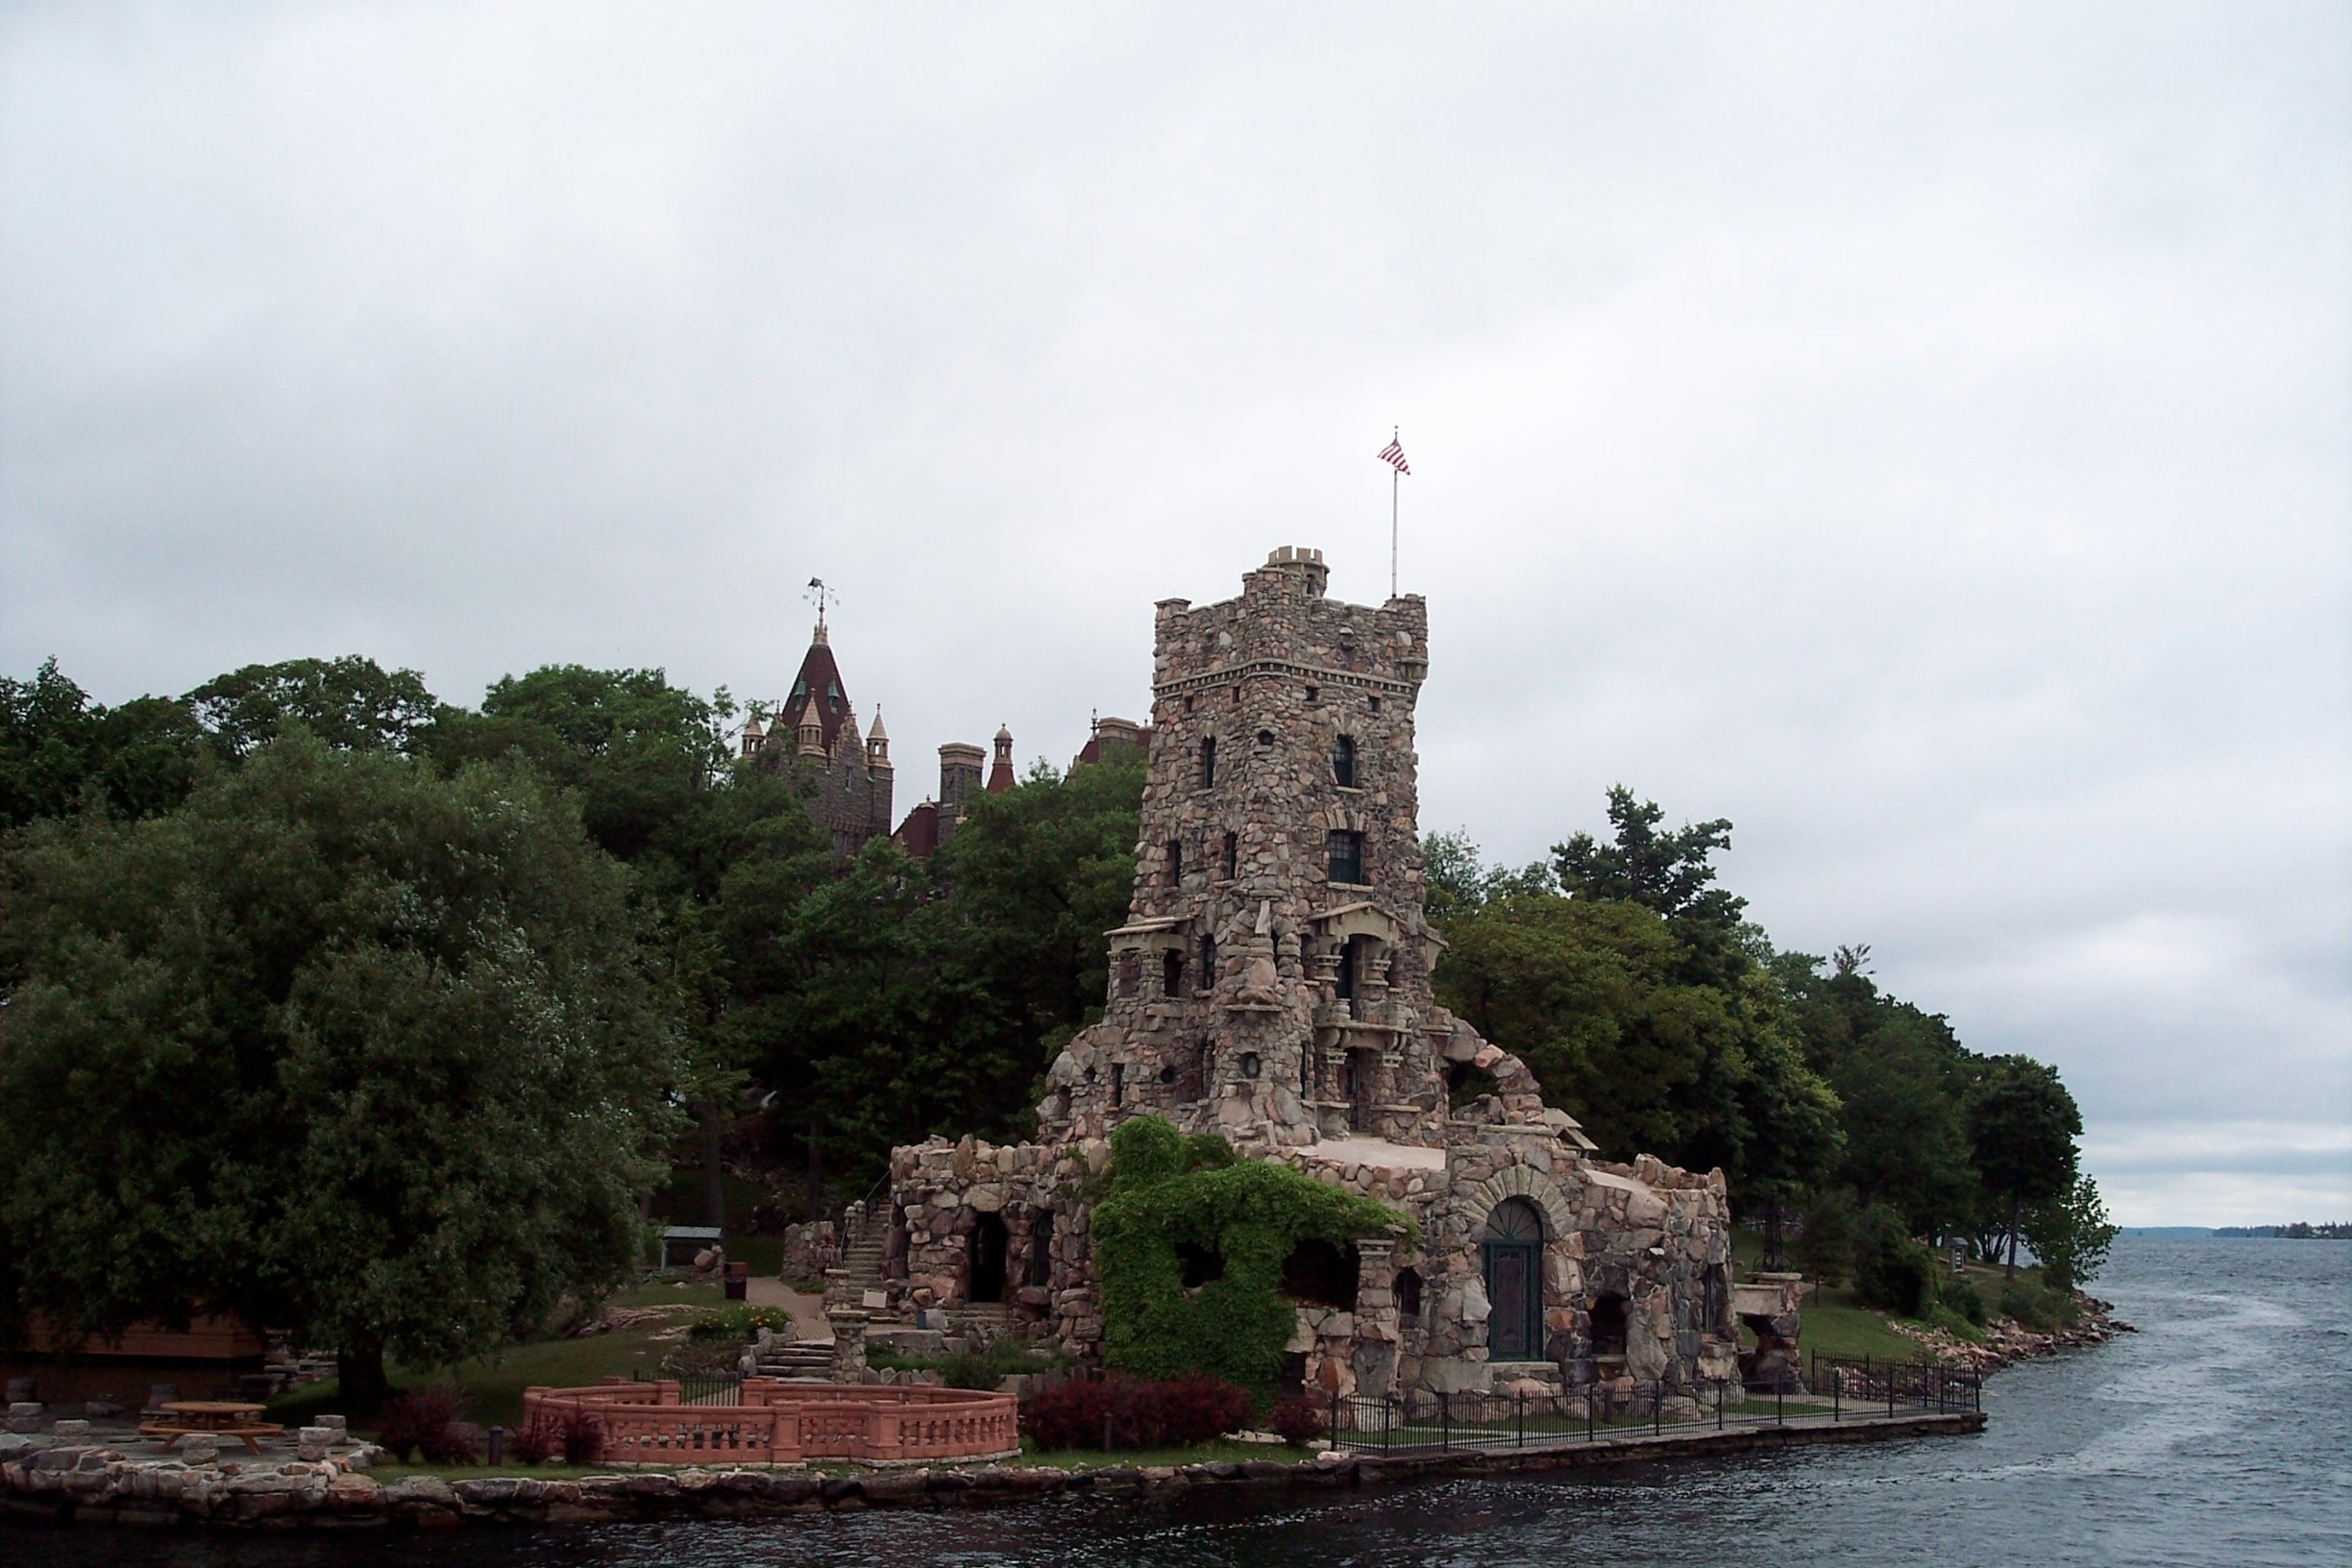 is boldt castle open for tours